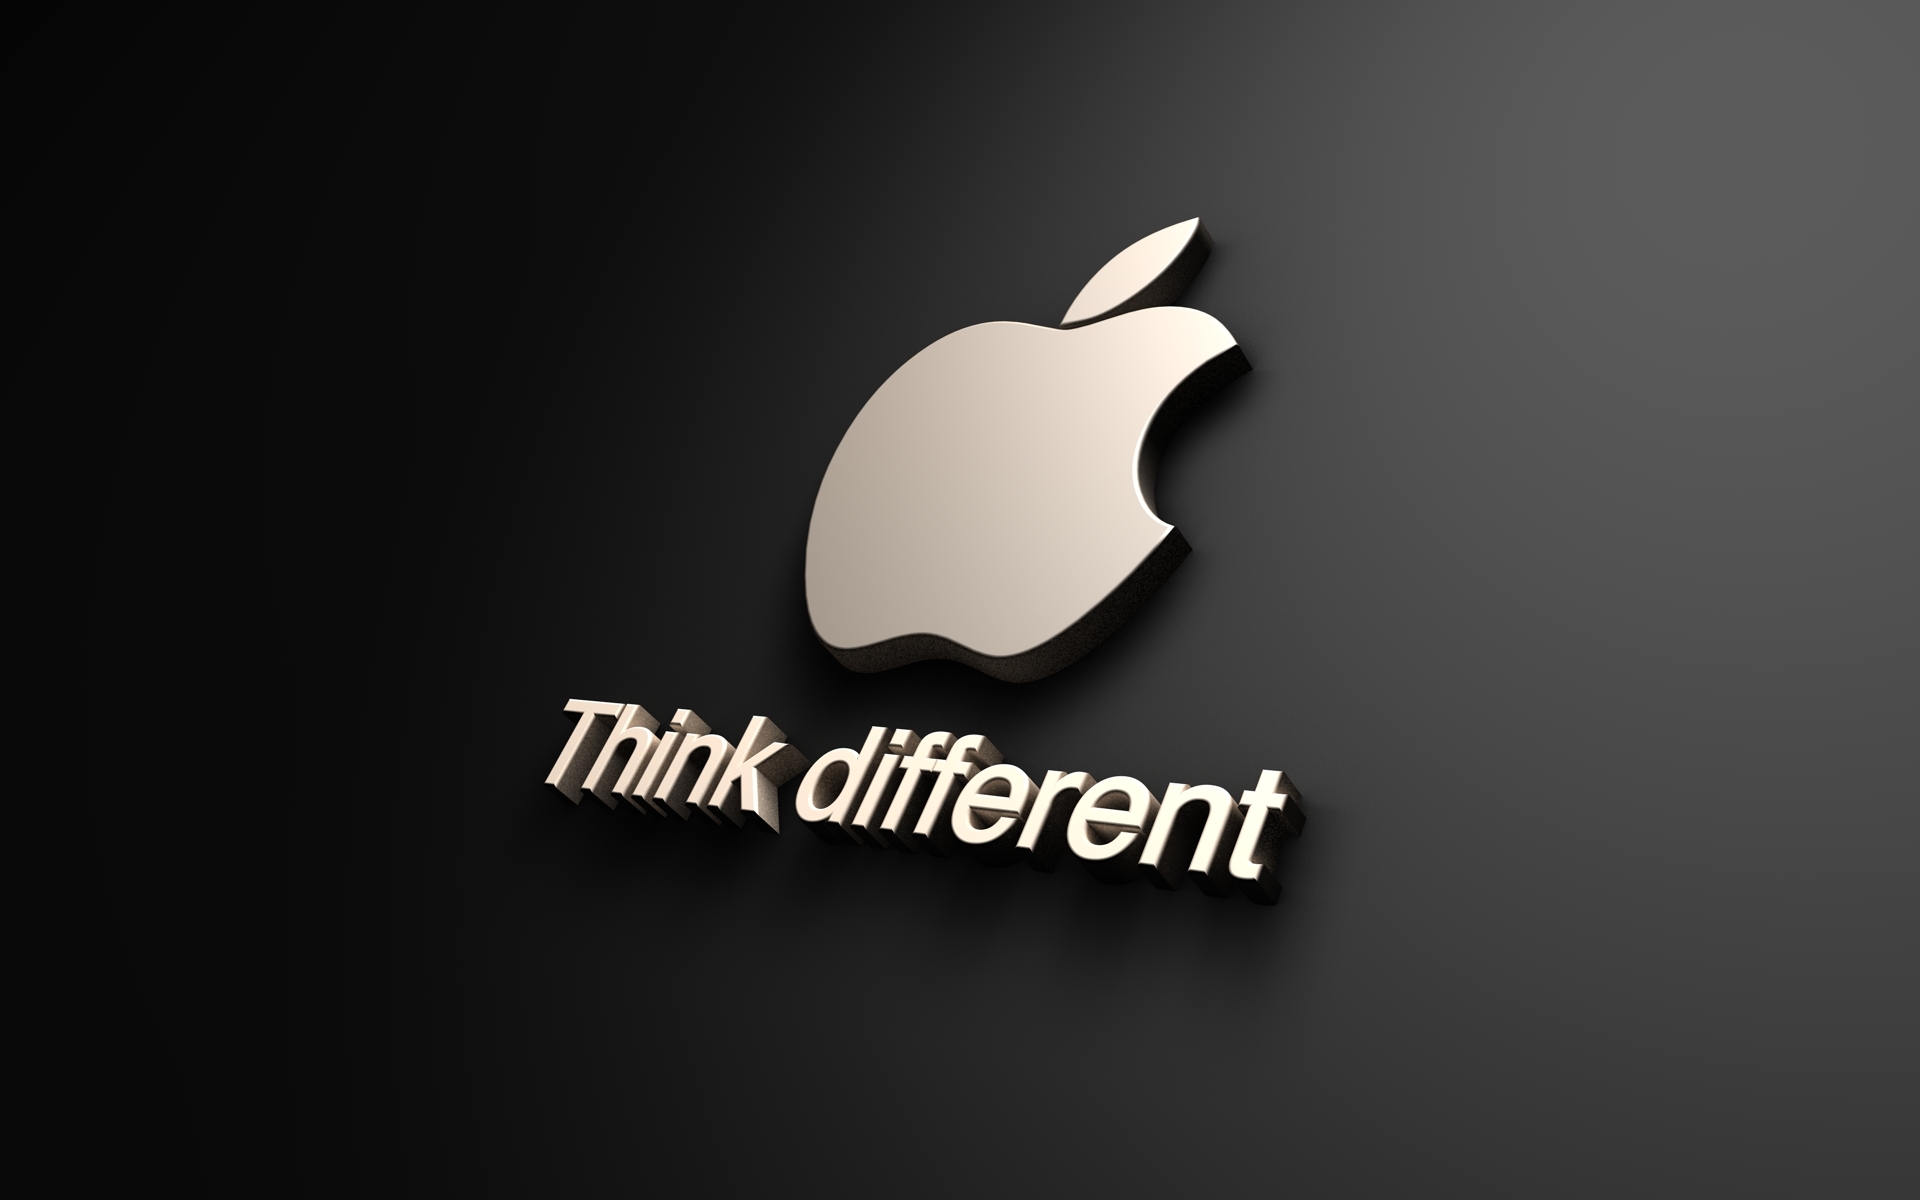 Free Apple 4k Ultra Hd Wallpaper Downloads 100 Apple 4k Ultra Hd  Wallpapers for FREE  Wallpaperscom